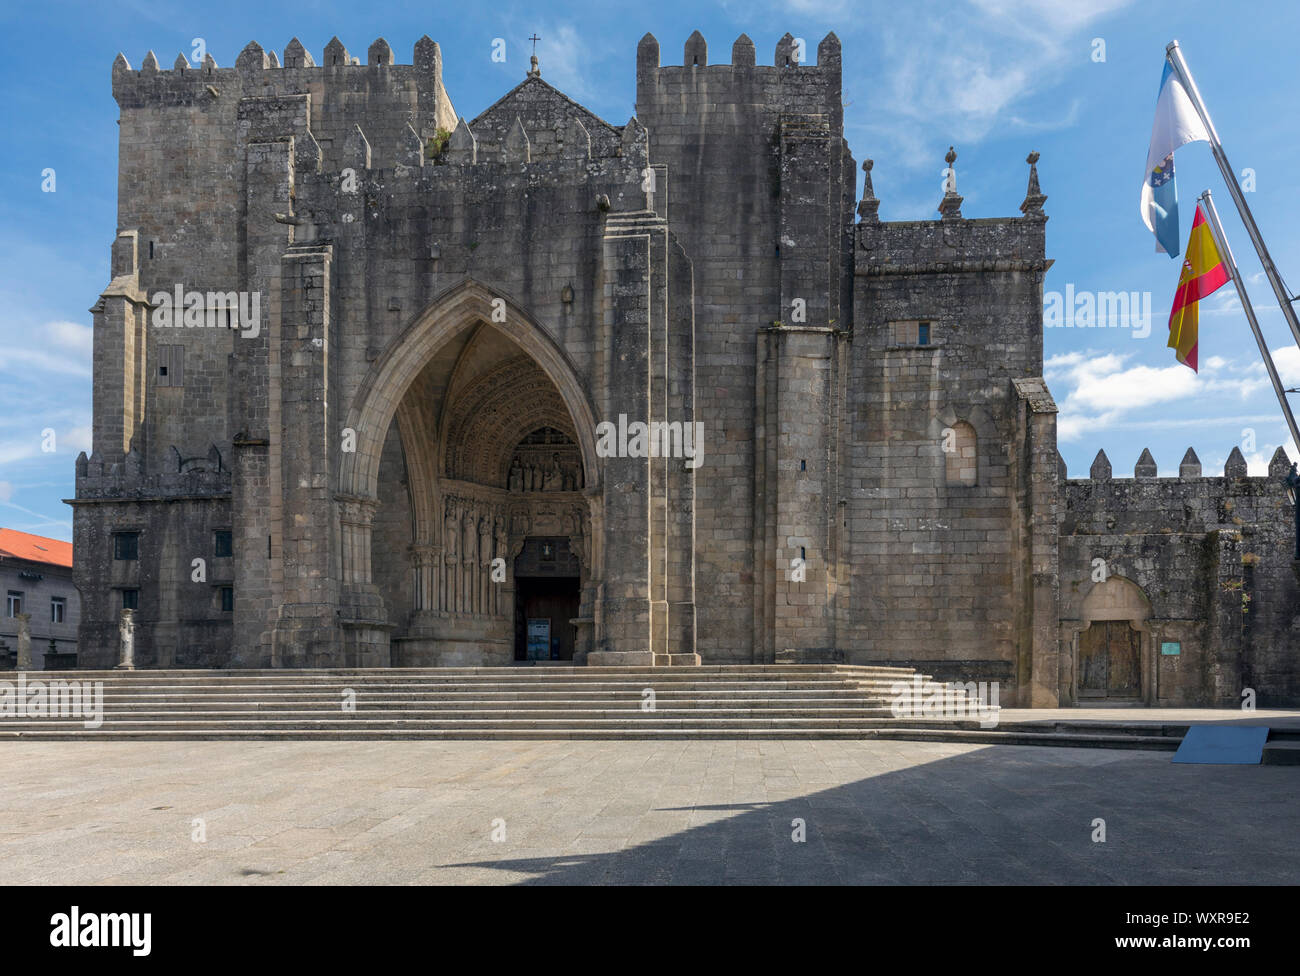 Der romanisch-gotischen Catedral de Santa Maria, während des 11. und 13. Jahrhundert errichtet. St. Mary's Cathedral. Tui, Provinz Pontevedra, Galicien, Spanien Stockfoto